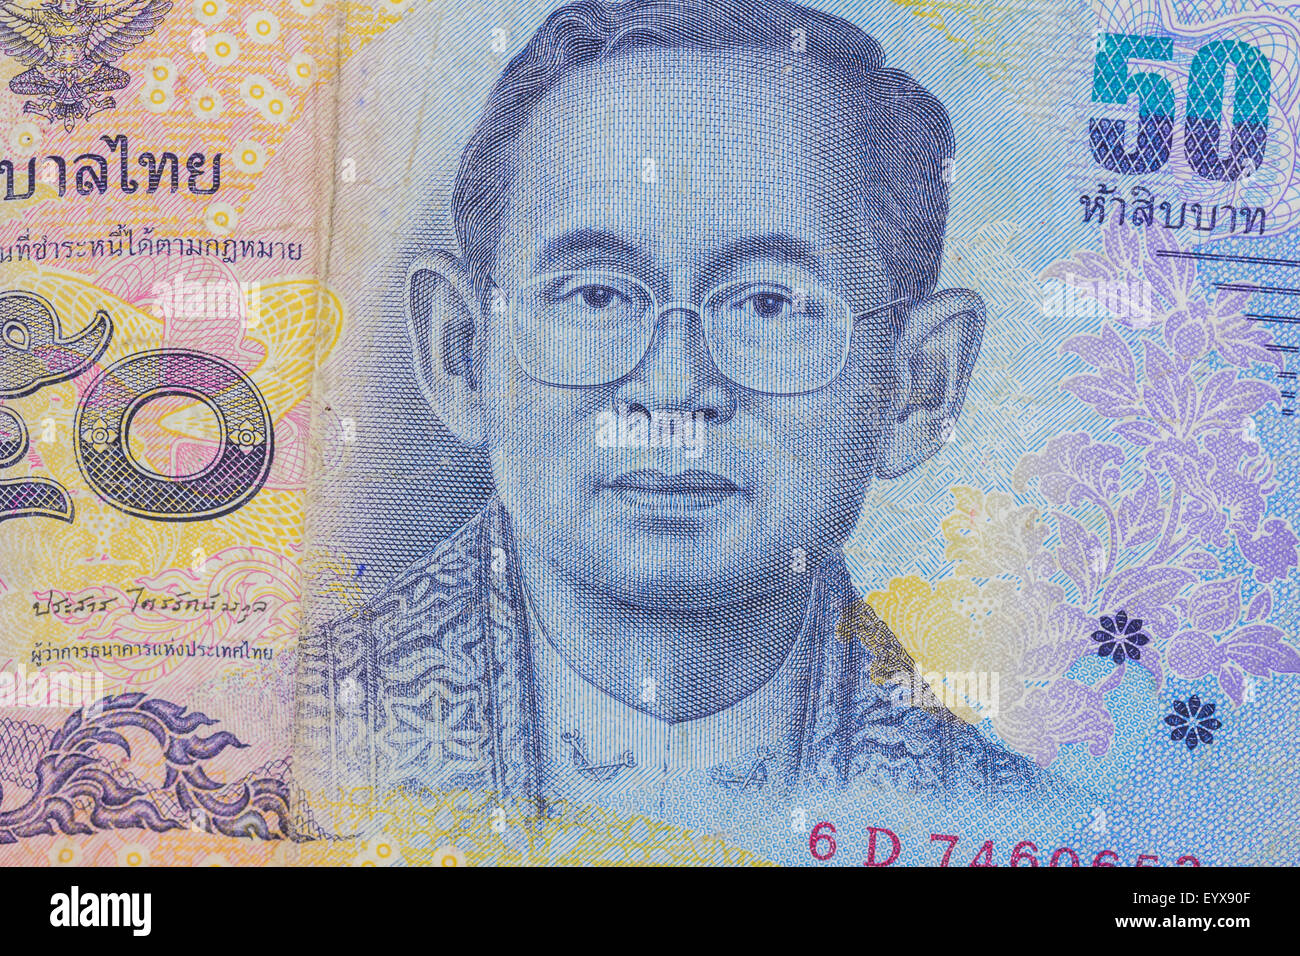 Thailand Währung, thai Baht mit den Bildern des Königs von Thailand hautnah. Stückelung von 50 Baht. Stockfoto